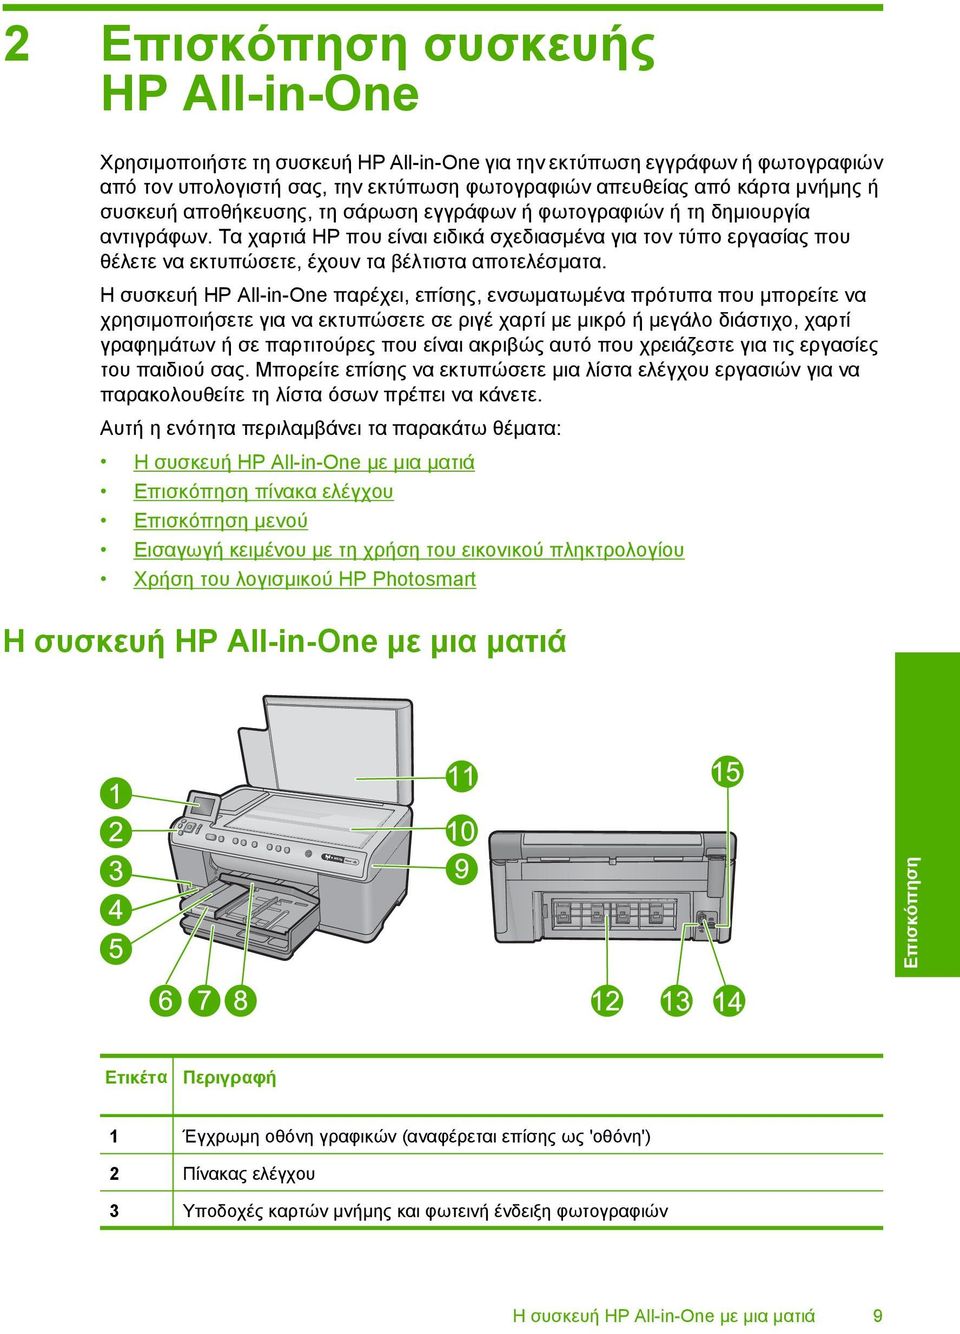 Τα χαρτιά HP που είναι ειδικά σχεδιασµένα για τον τύπο εργασίας που θέλετε να εκτυπώσετε, έχουν τα βέλτιστα αποτελέσµατα.